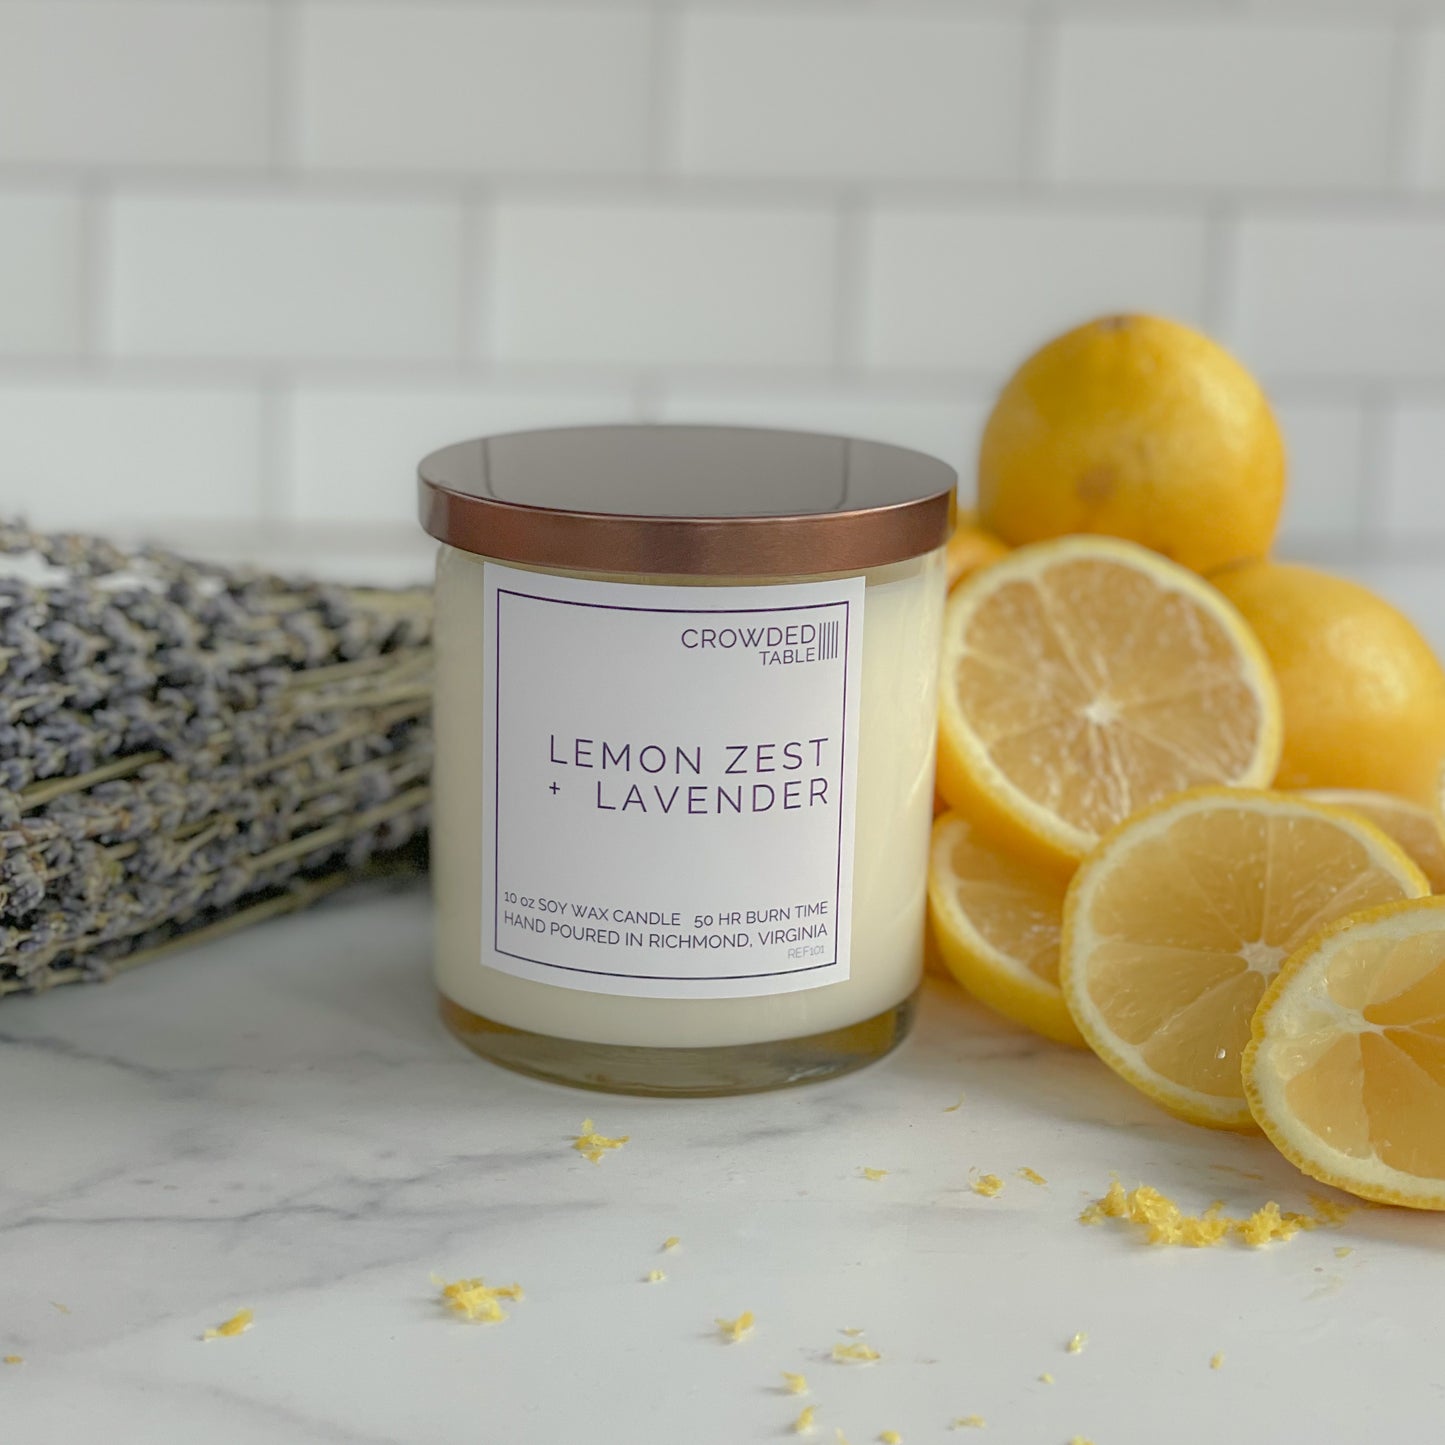 Lemon Zest + Lavender 10 oz. Pure Soy Wax Candle